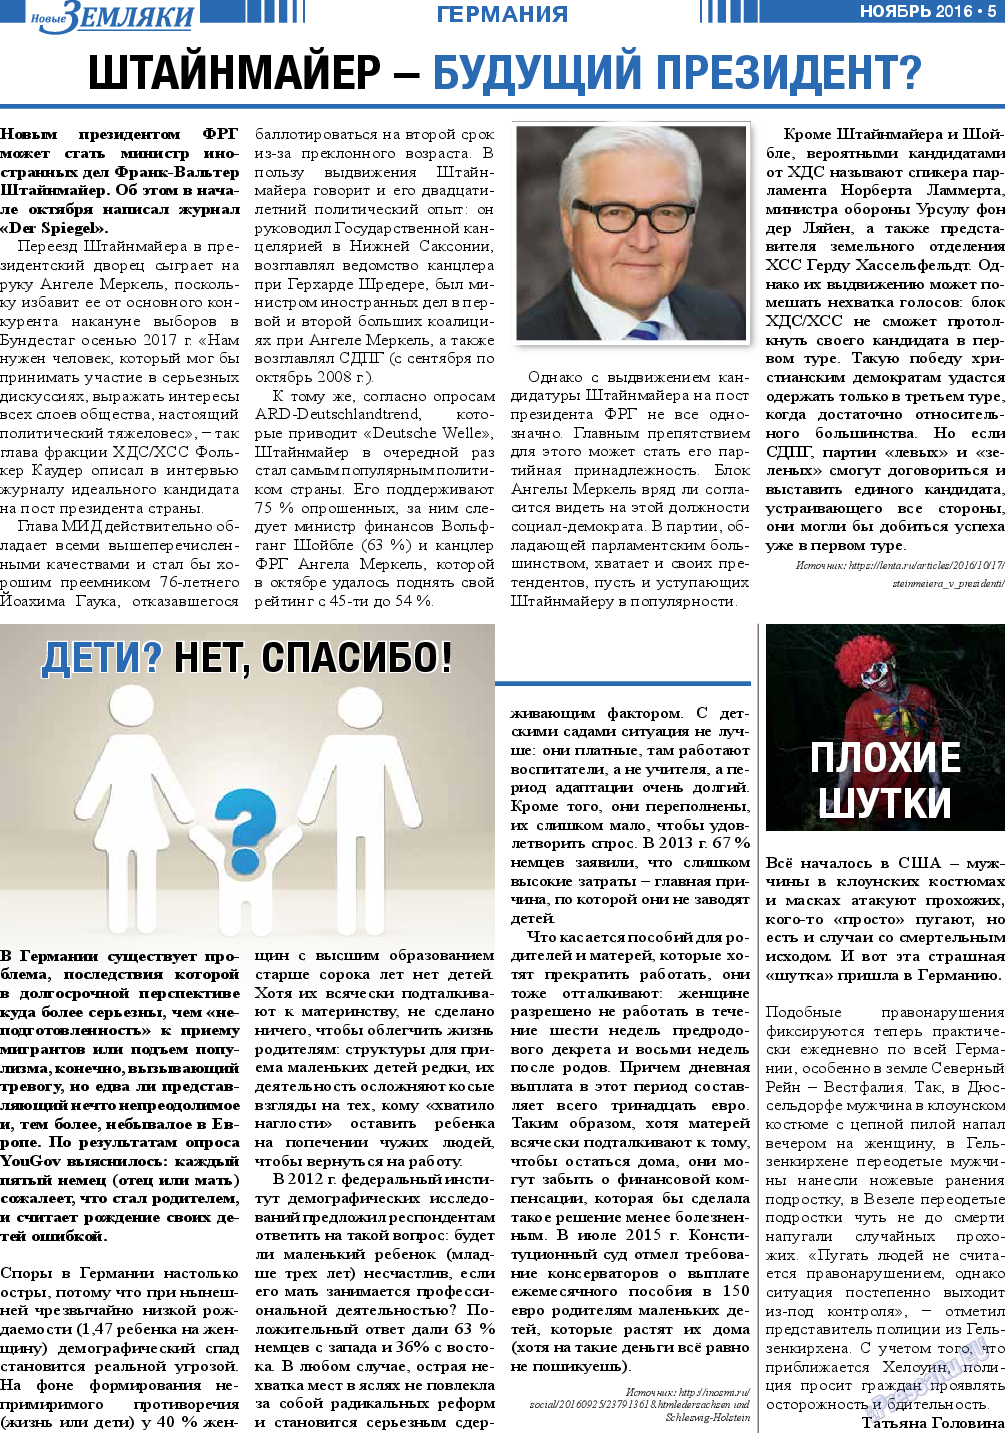 Новые Земляки, газета. 2016 №11 стр.5